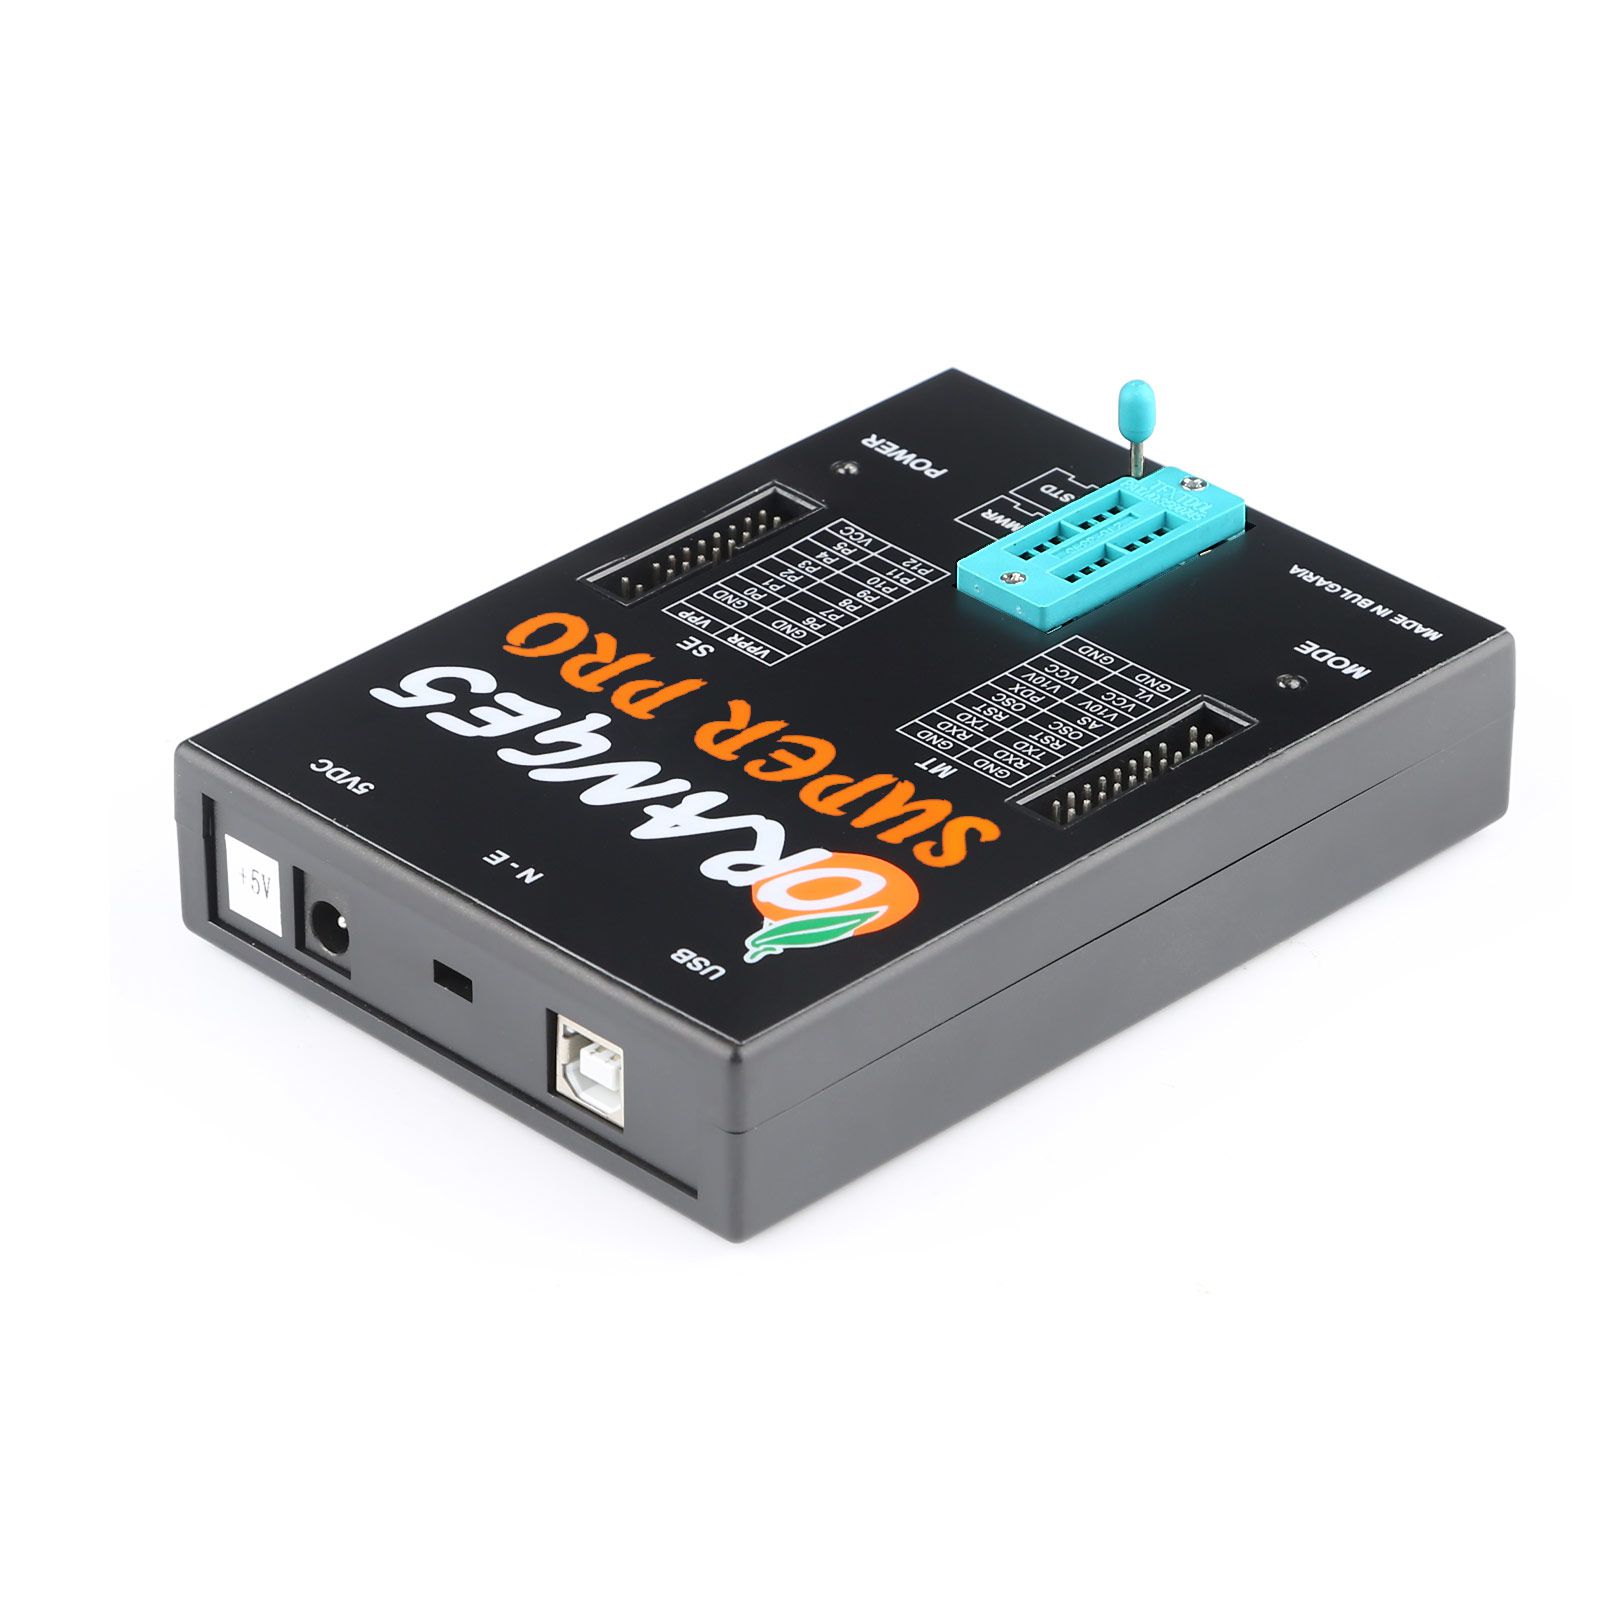 La herramienta de programación orange5 super pro v1.35 y el host del perro cifrado USB sin adaptadores